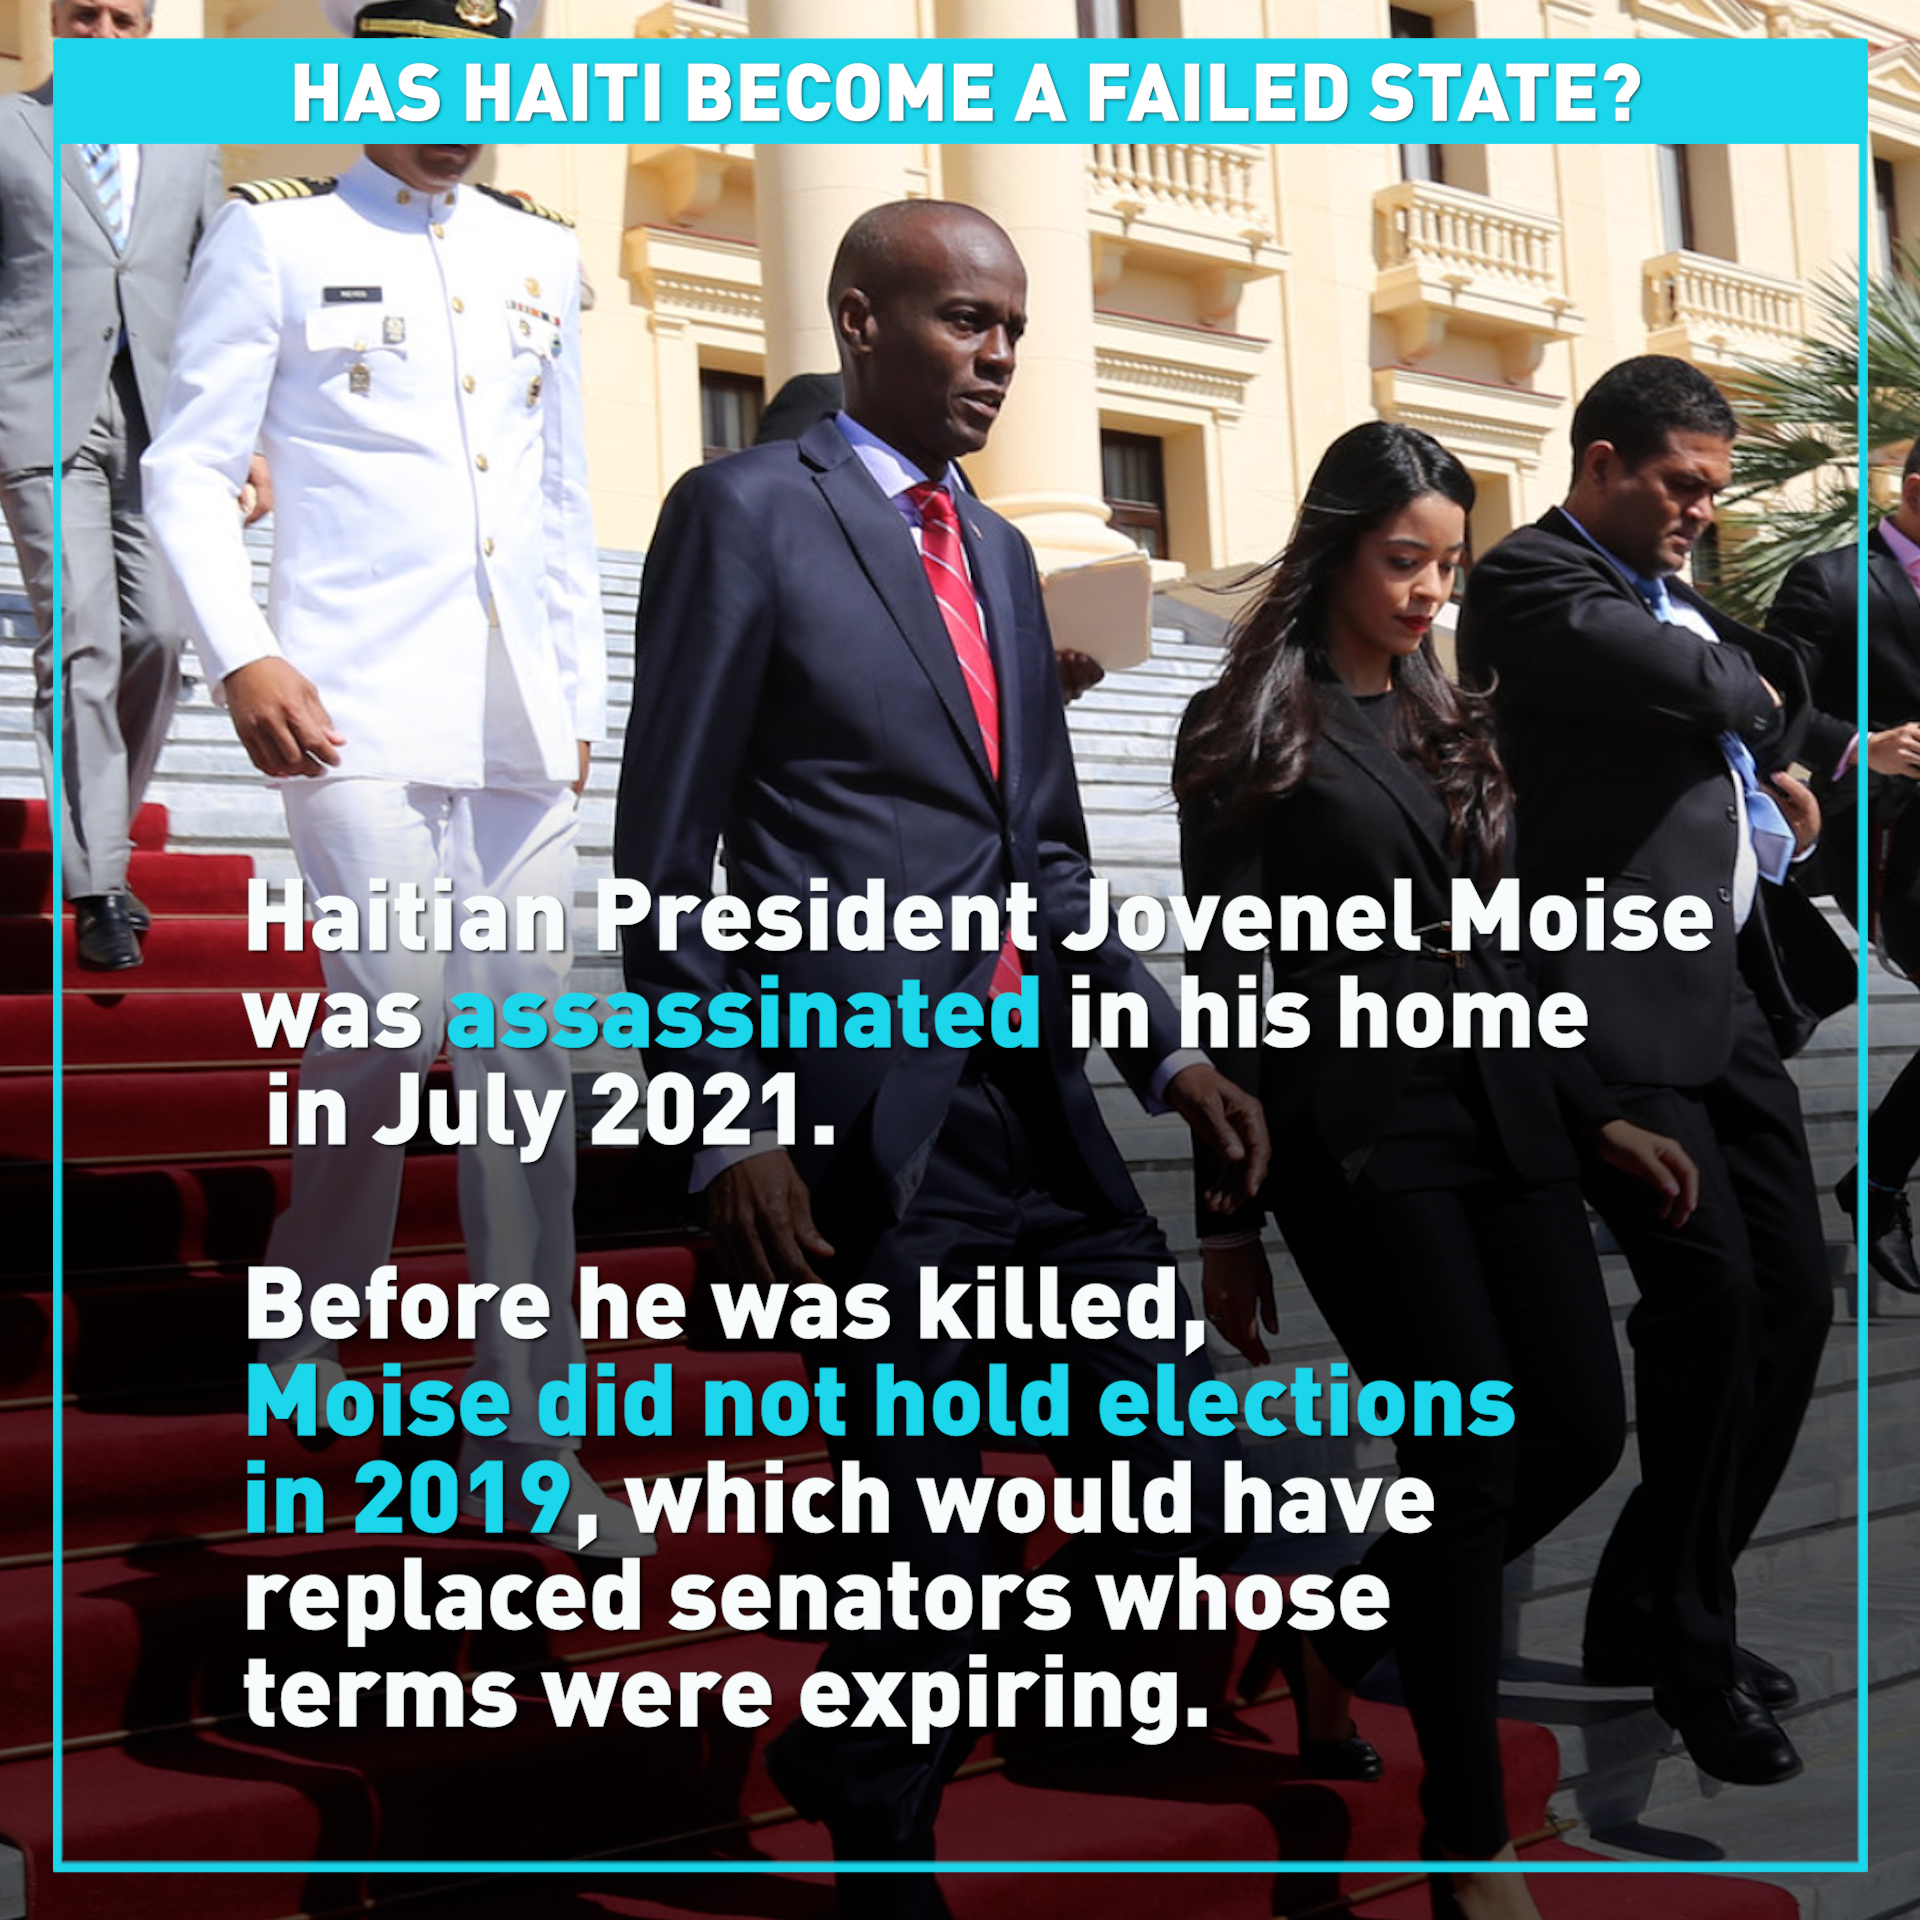 Has Haiti become a failed state?